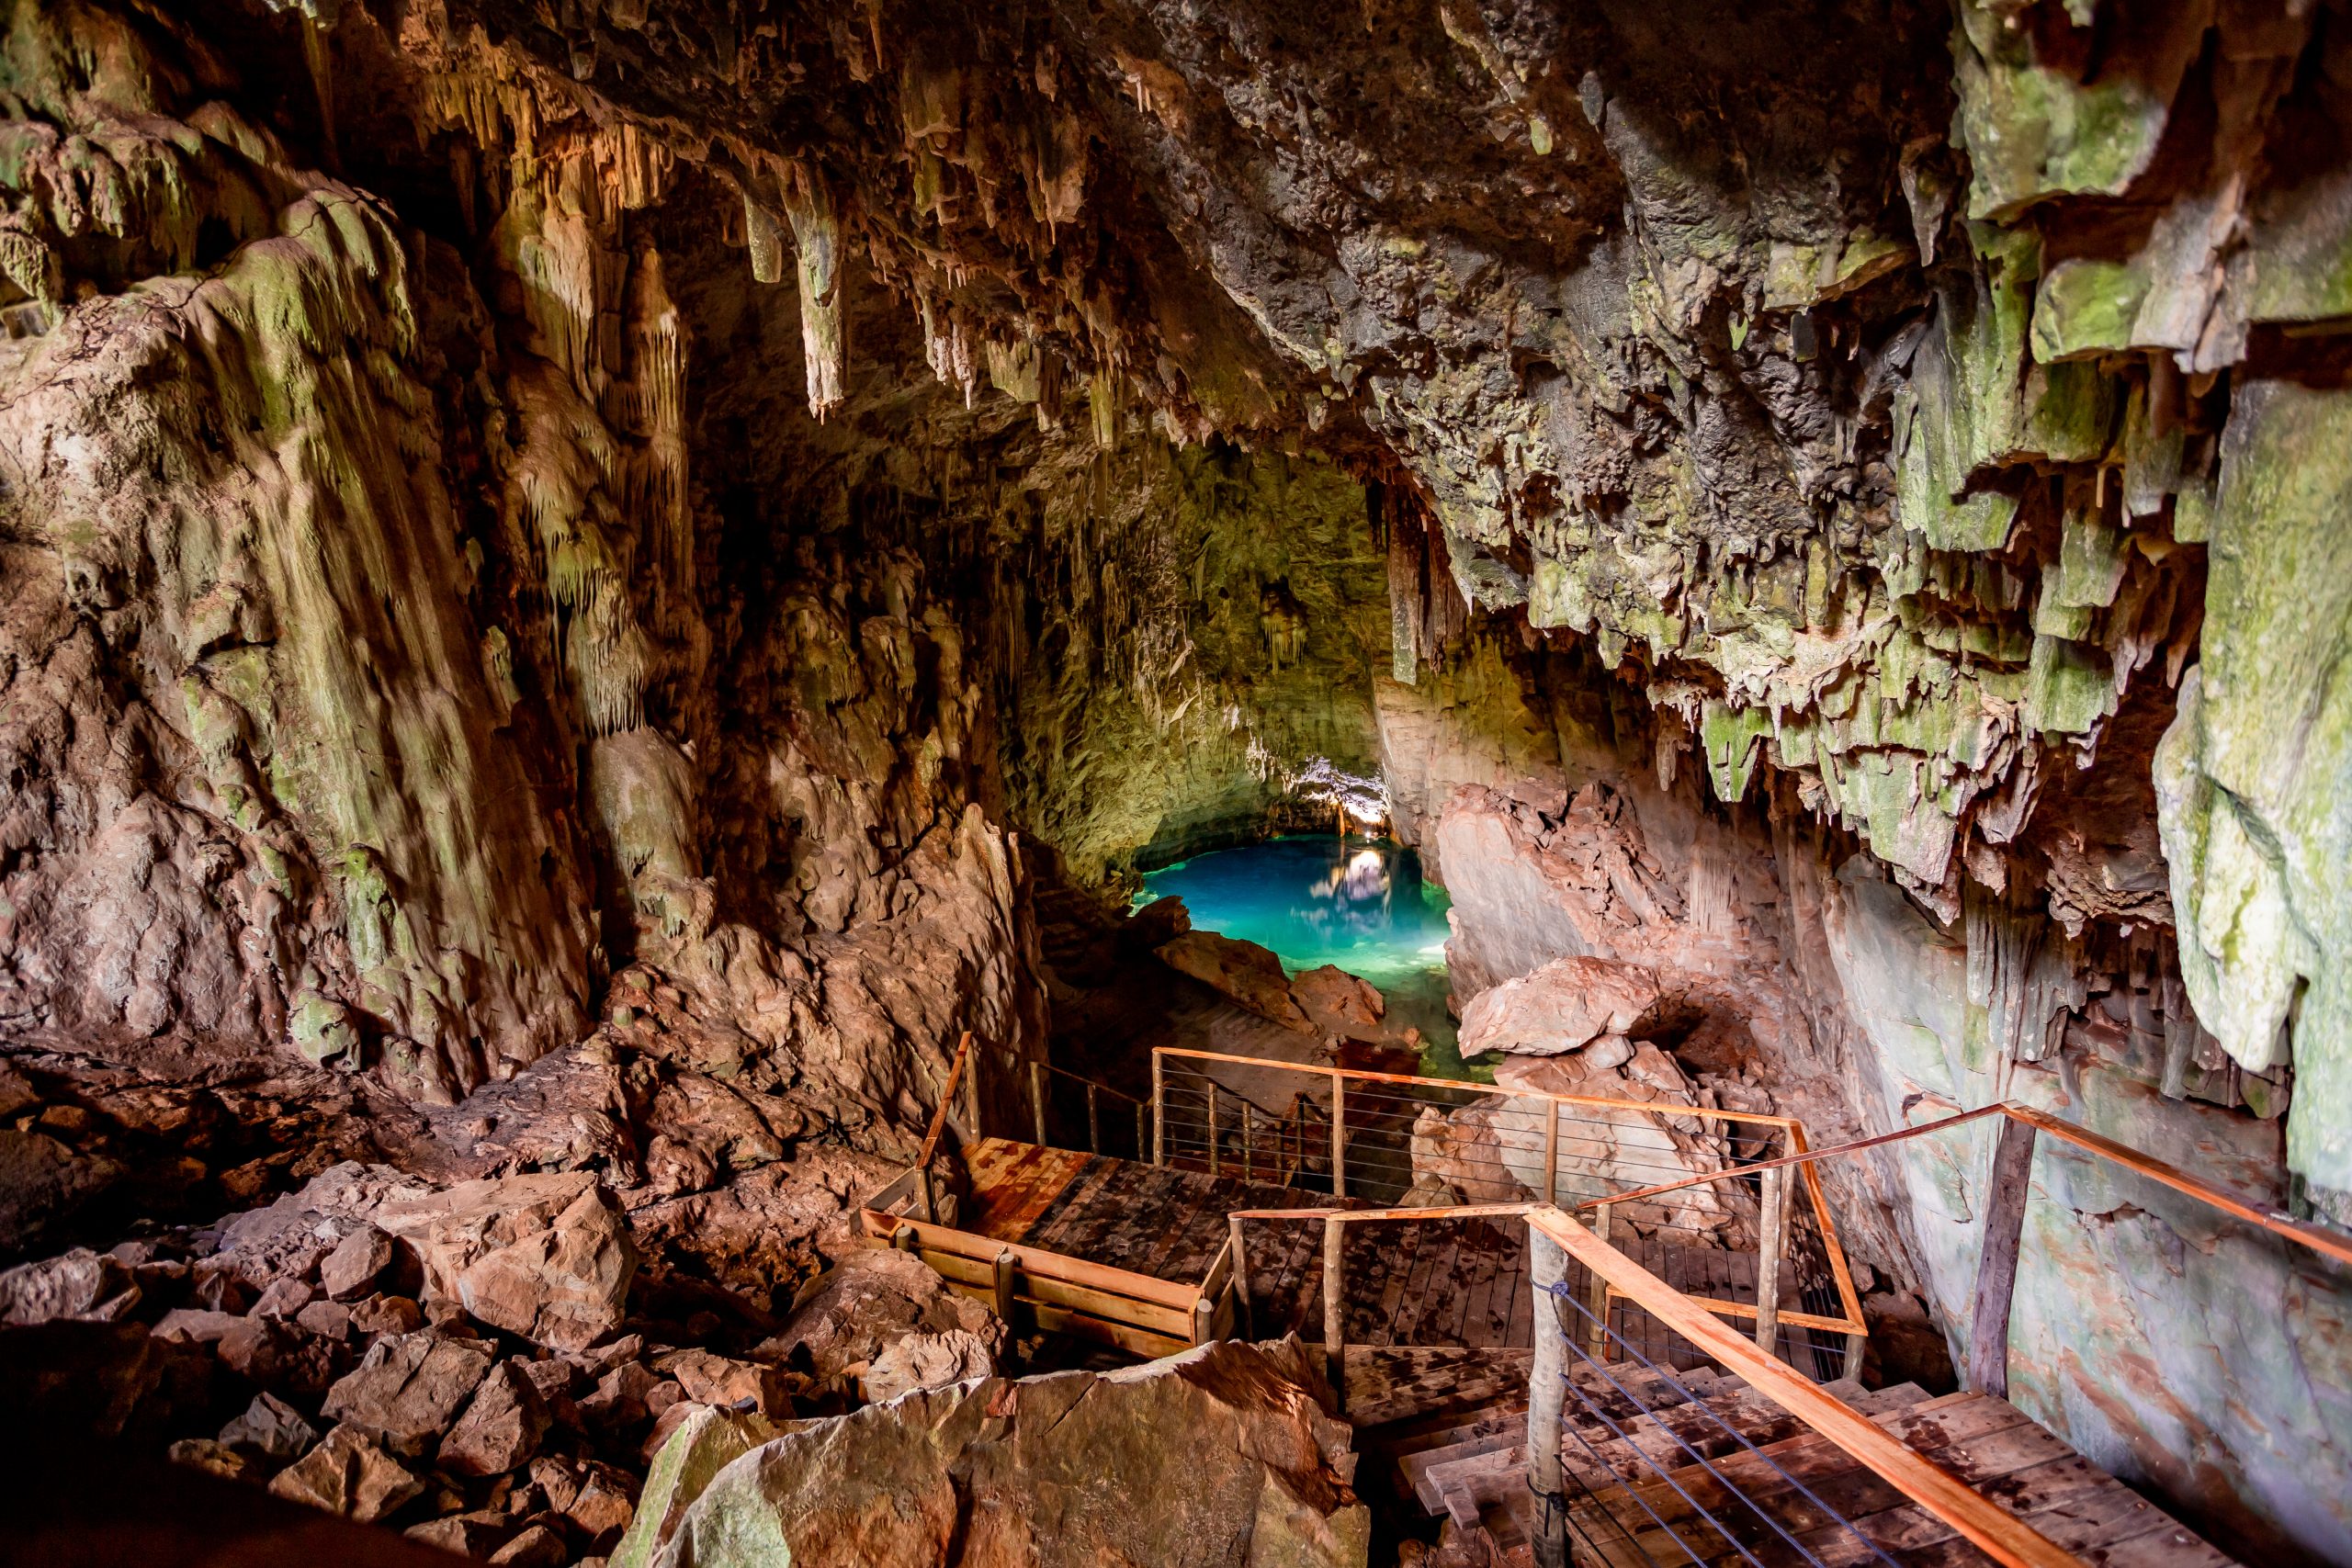 NOVA GRUTA: Bonito inaugura caverna com 70 metros de profundidade